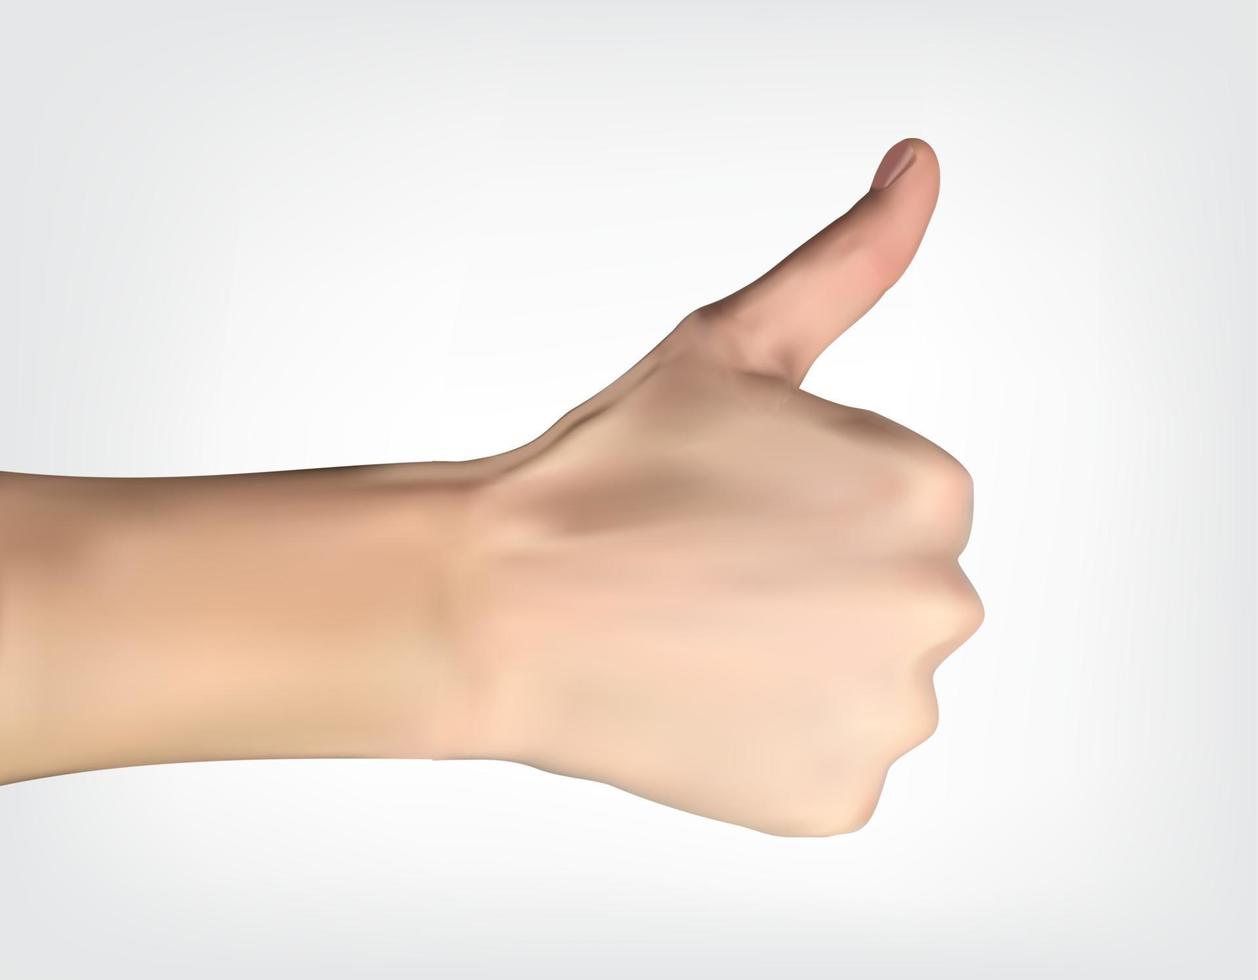 realistische hand met duim omhoog die aangeeft dat alles goed is. vector illustratie